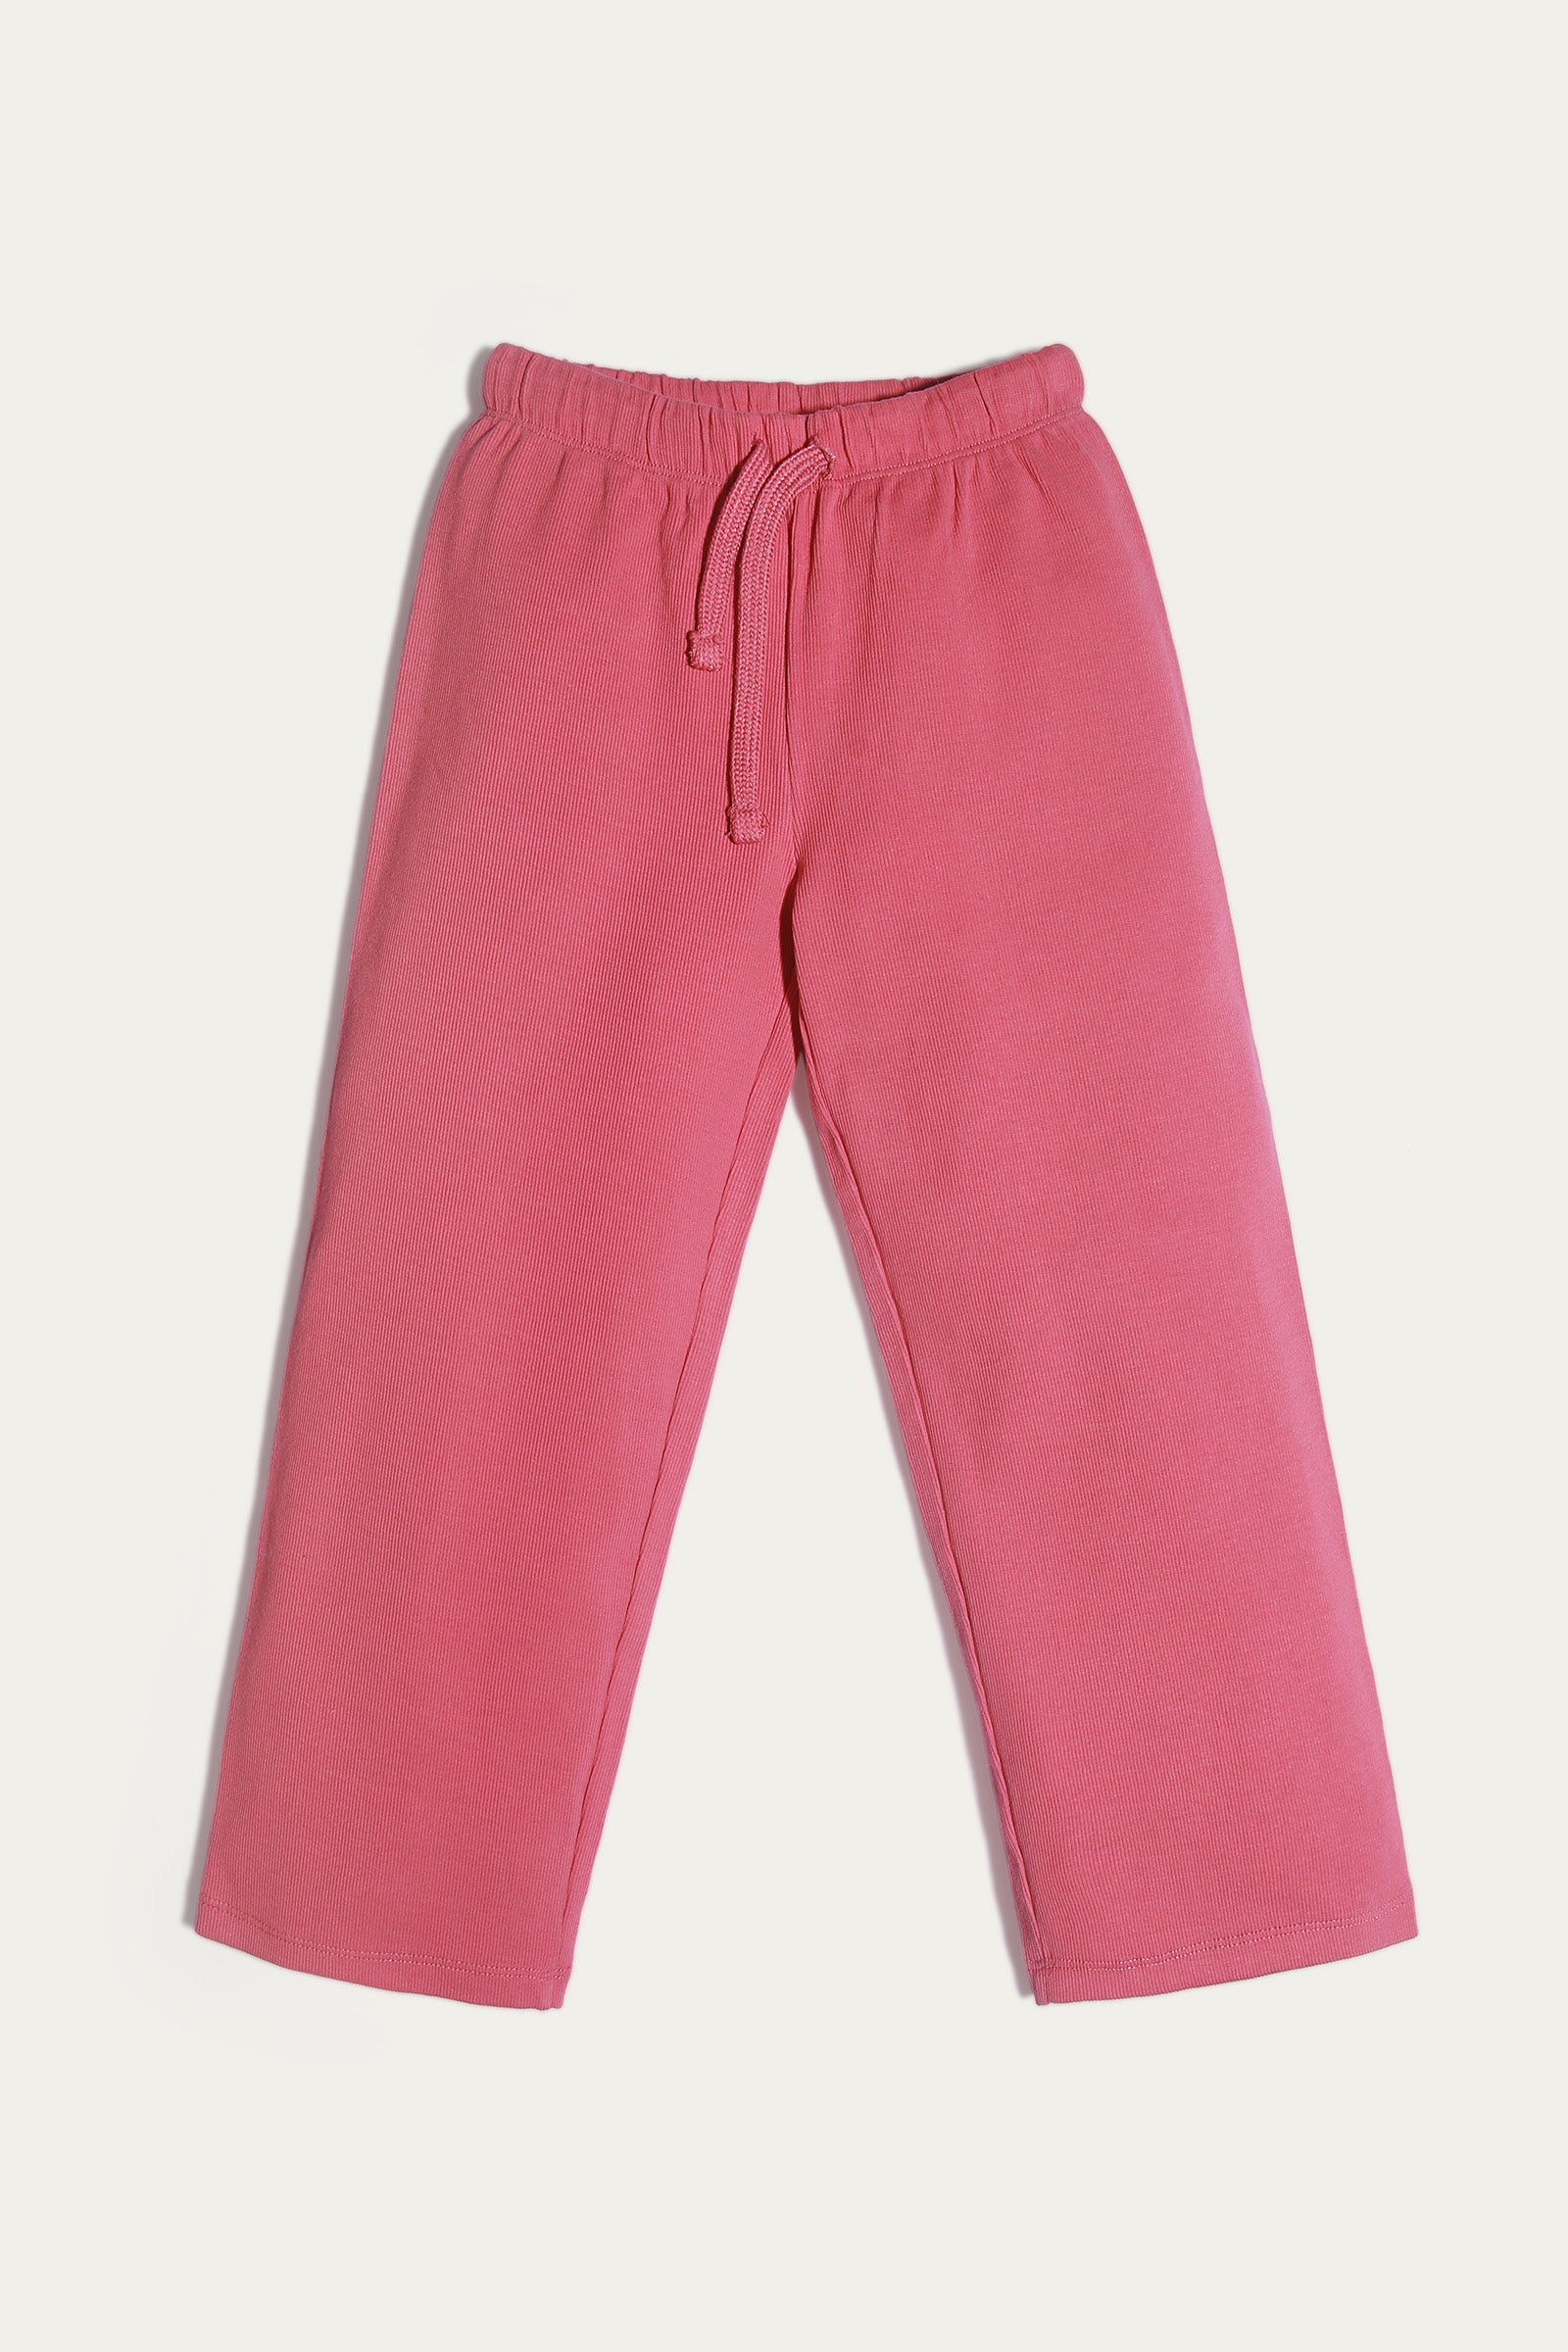 Straight Fit Pajamas (MSGBPJ-06)